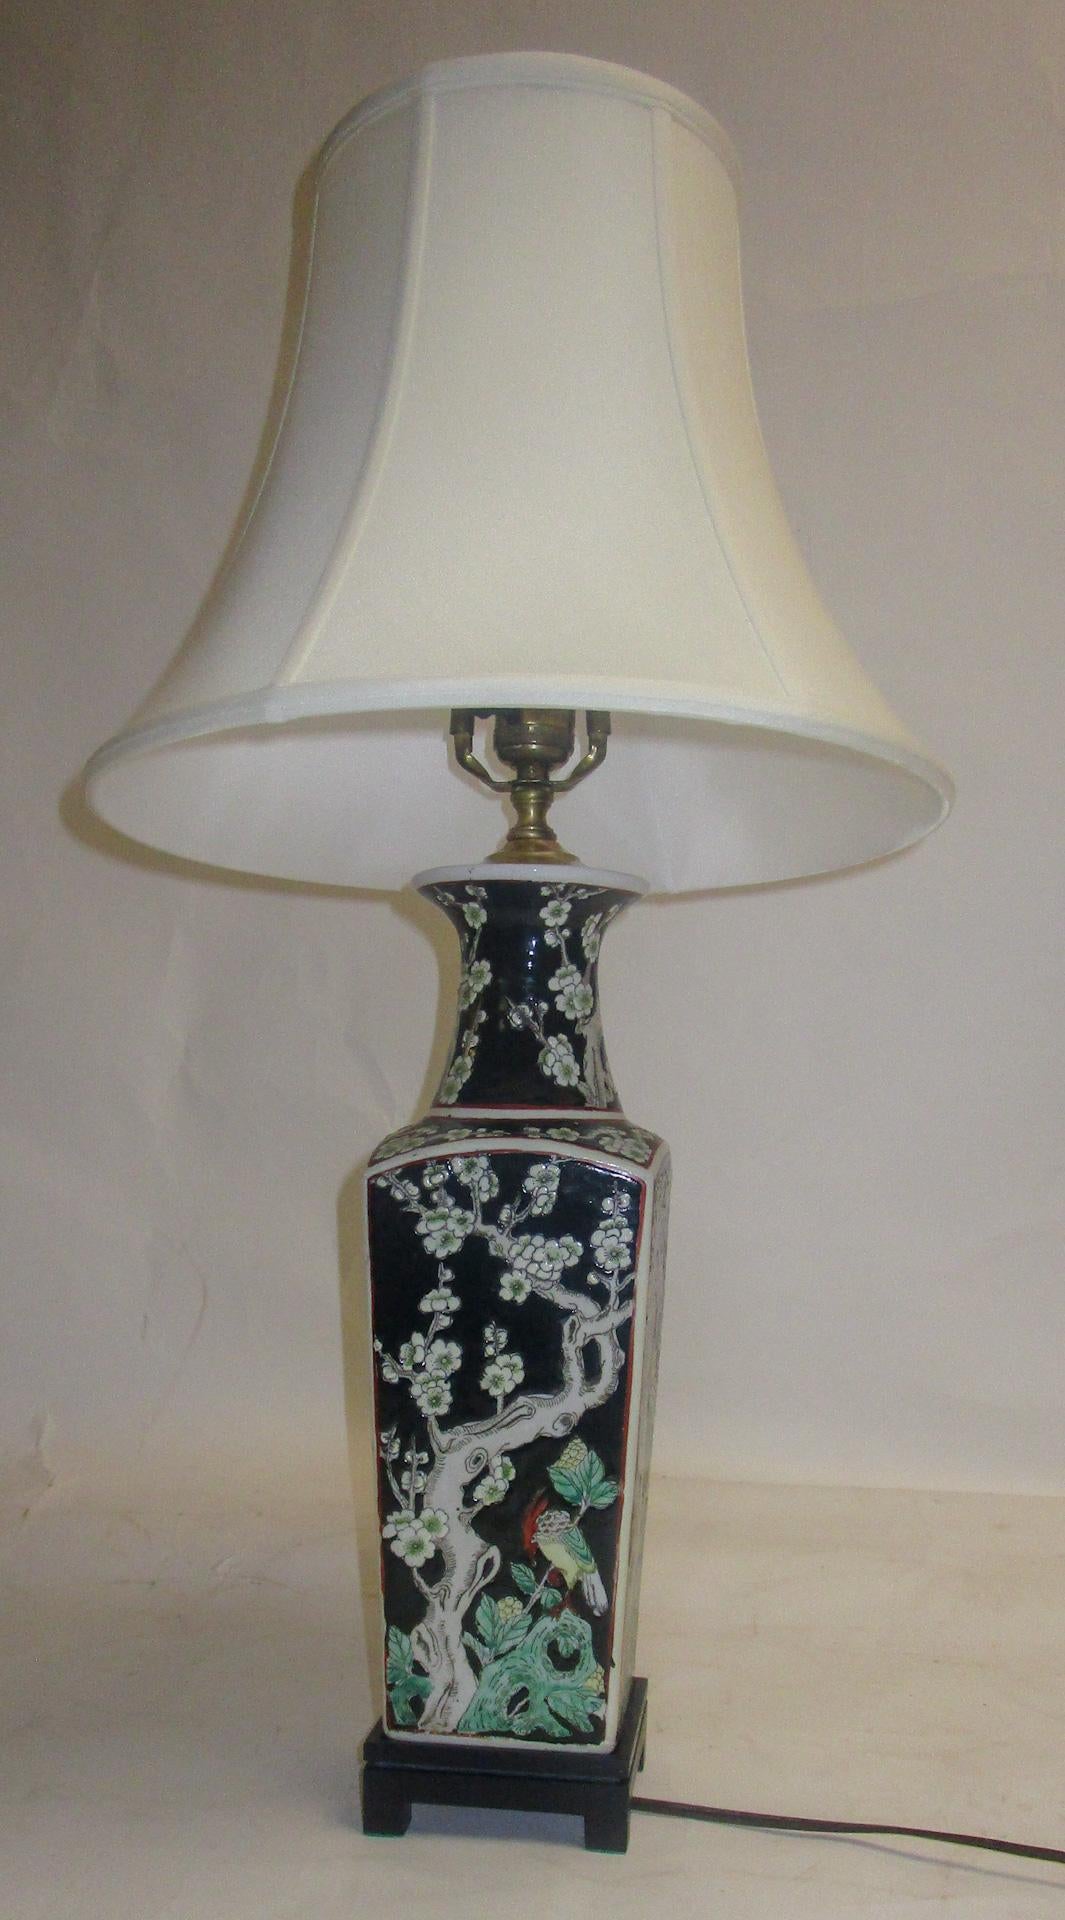 Lampe de table d'exportation chinoise faite à partir d'un vase gracieux décoré d'oiseaux colorés, de branches de cornouiller et de fruits sur une surface en écorce d'orange. La quincaillerie est en laiton et le vase est perché sur une élégante base